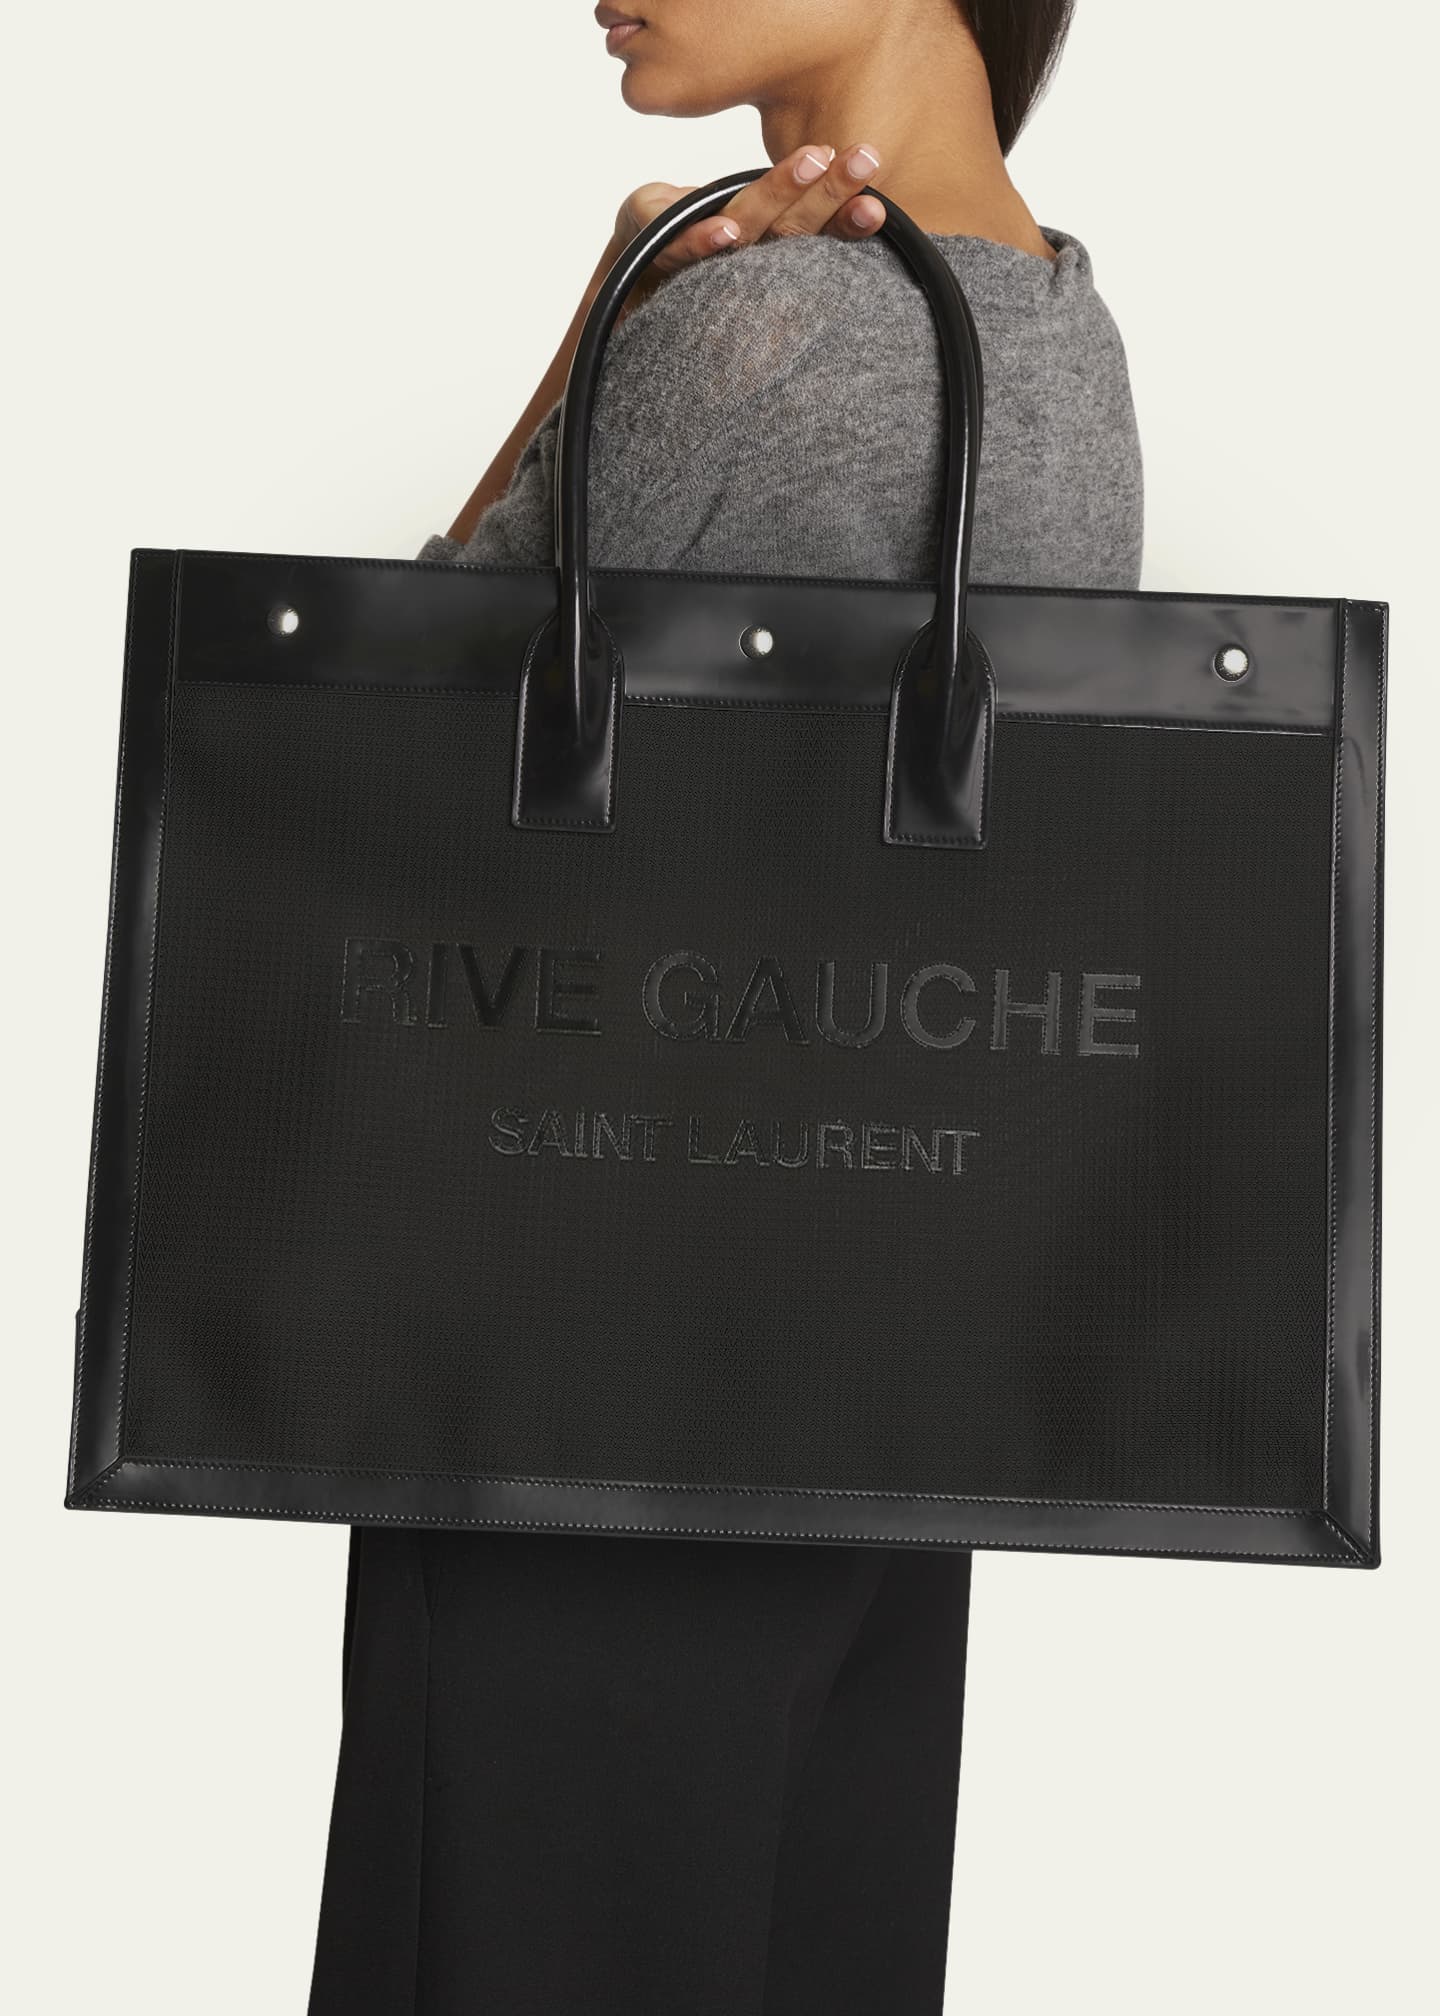 Saint Laurent Rive Gauche Small White Linen Tote Bag New